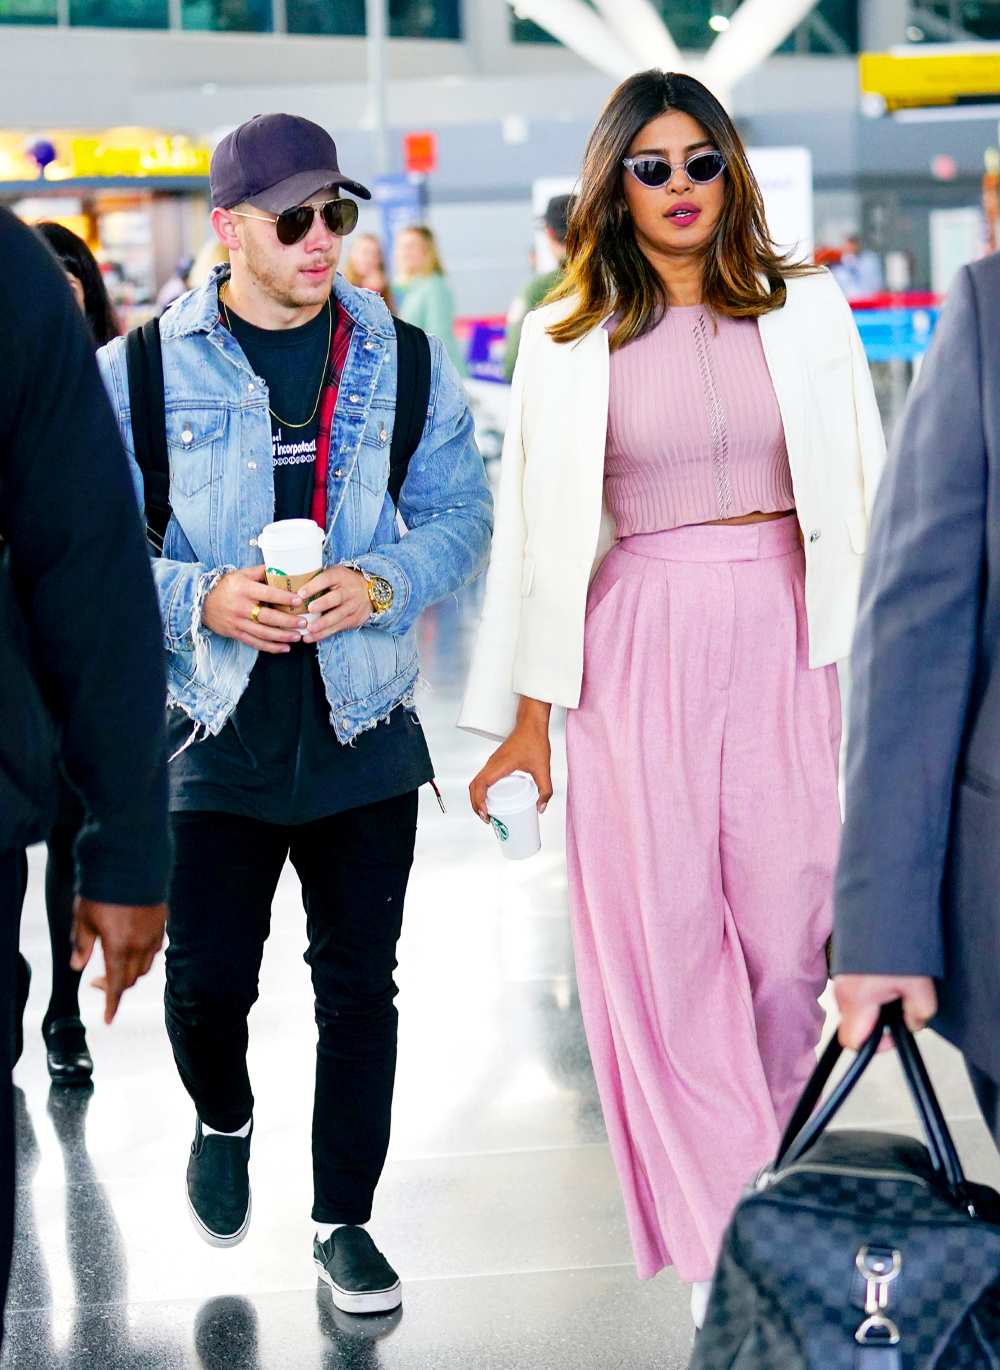 Nick Jonas and Priyanka Chopra at JFK airport on June 8, 2018 in New York City.